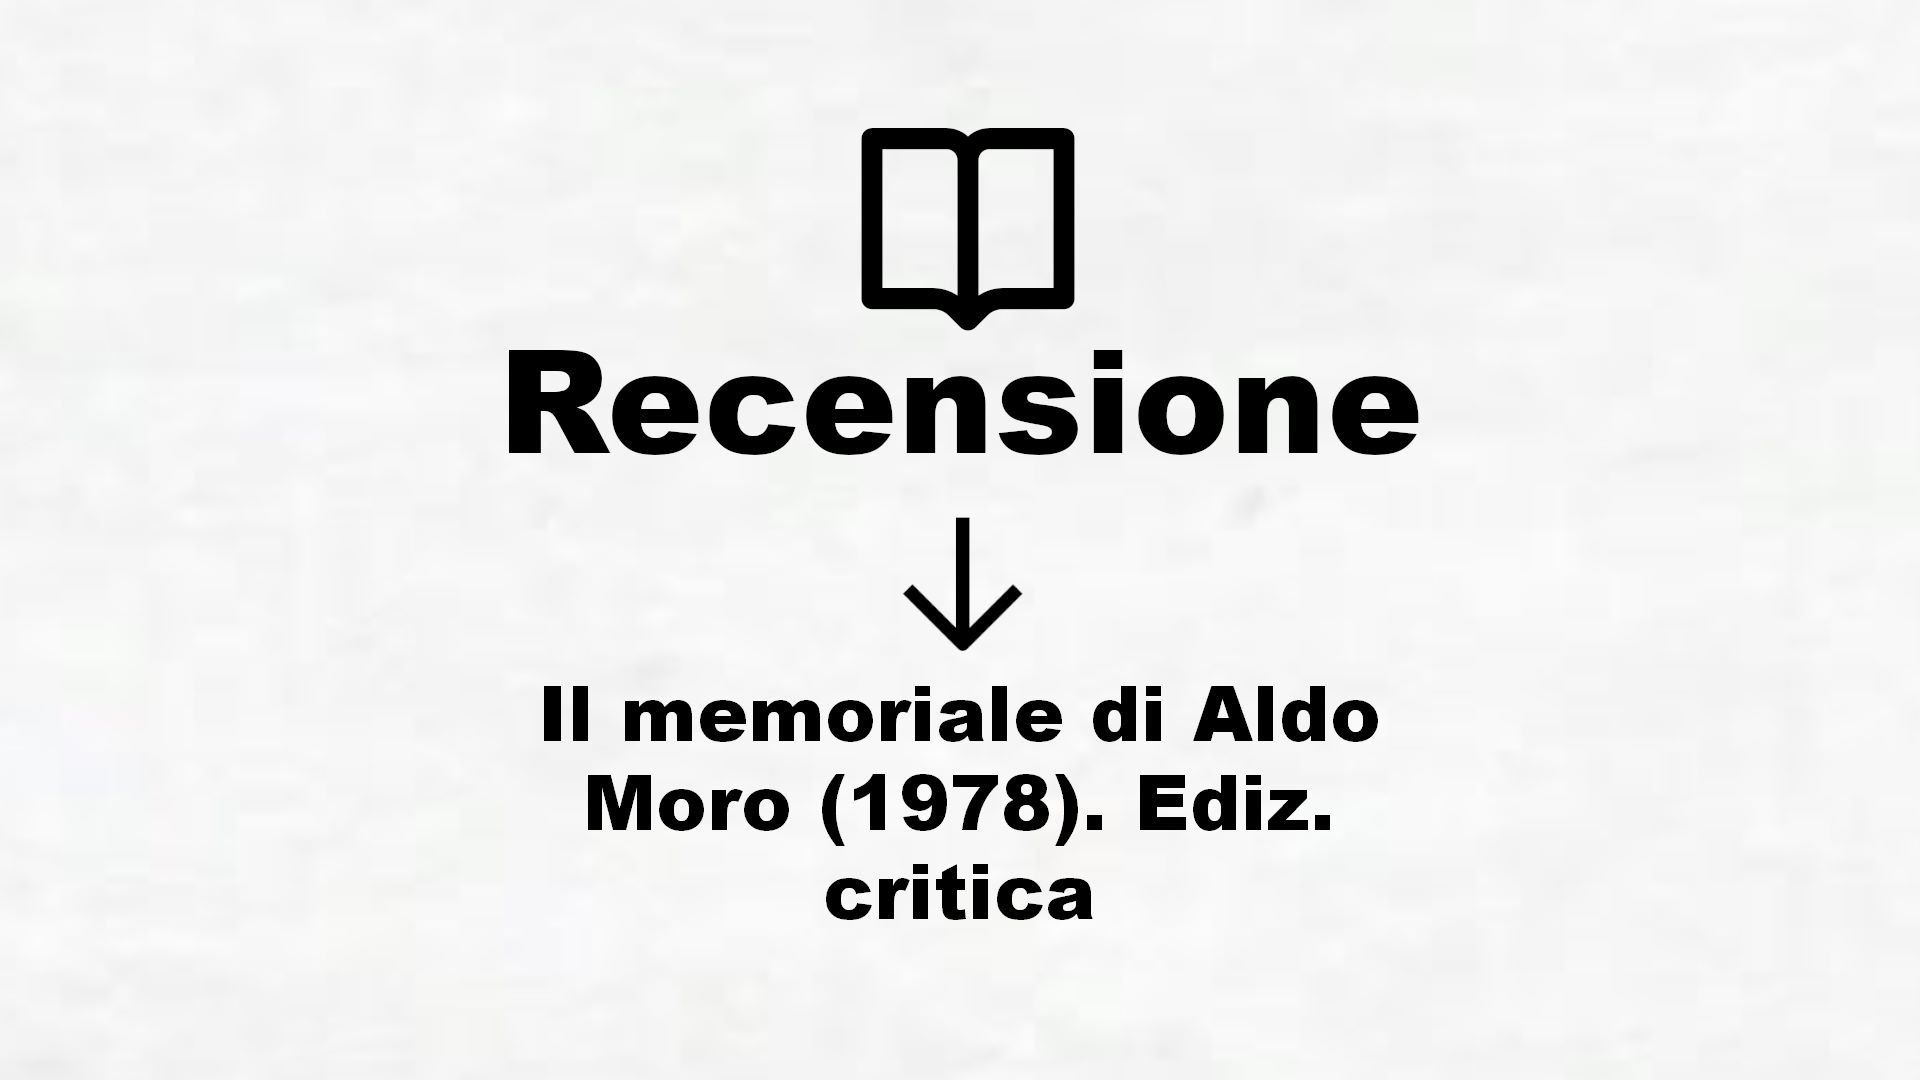 Il memoriale di Aldo Moro (1978). Ediz. critica – Recensione Libro